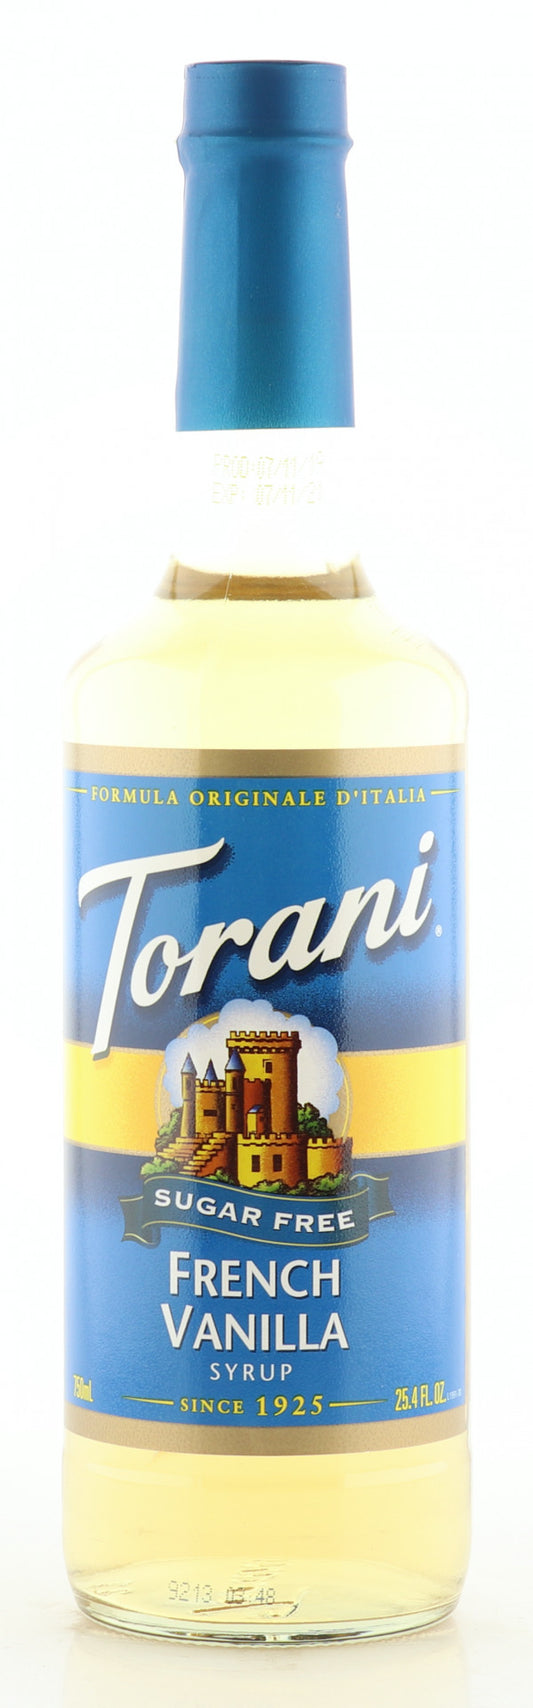 Torani Sirup zuckerfrei French Vanilla Geschmack